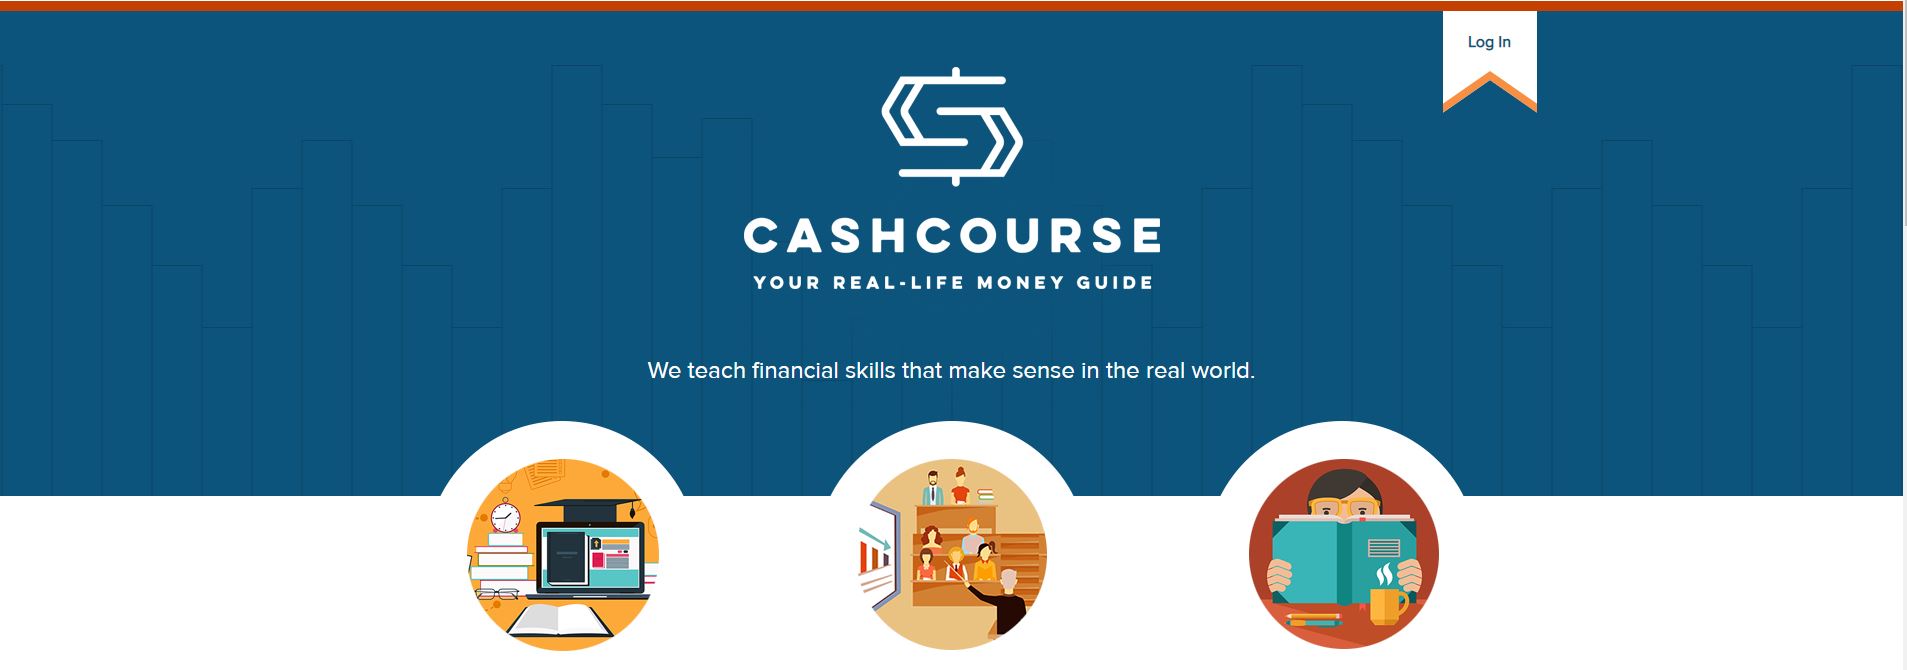 CashCourse screenshot to register